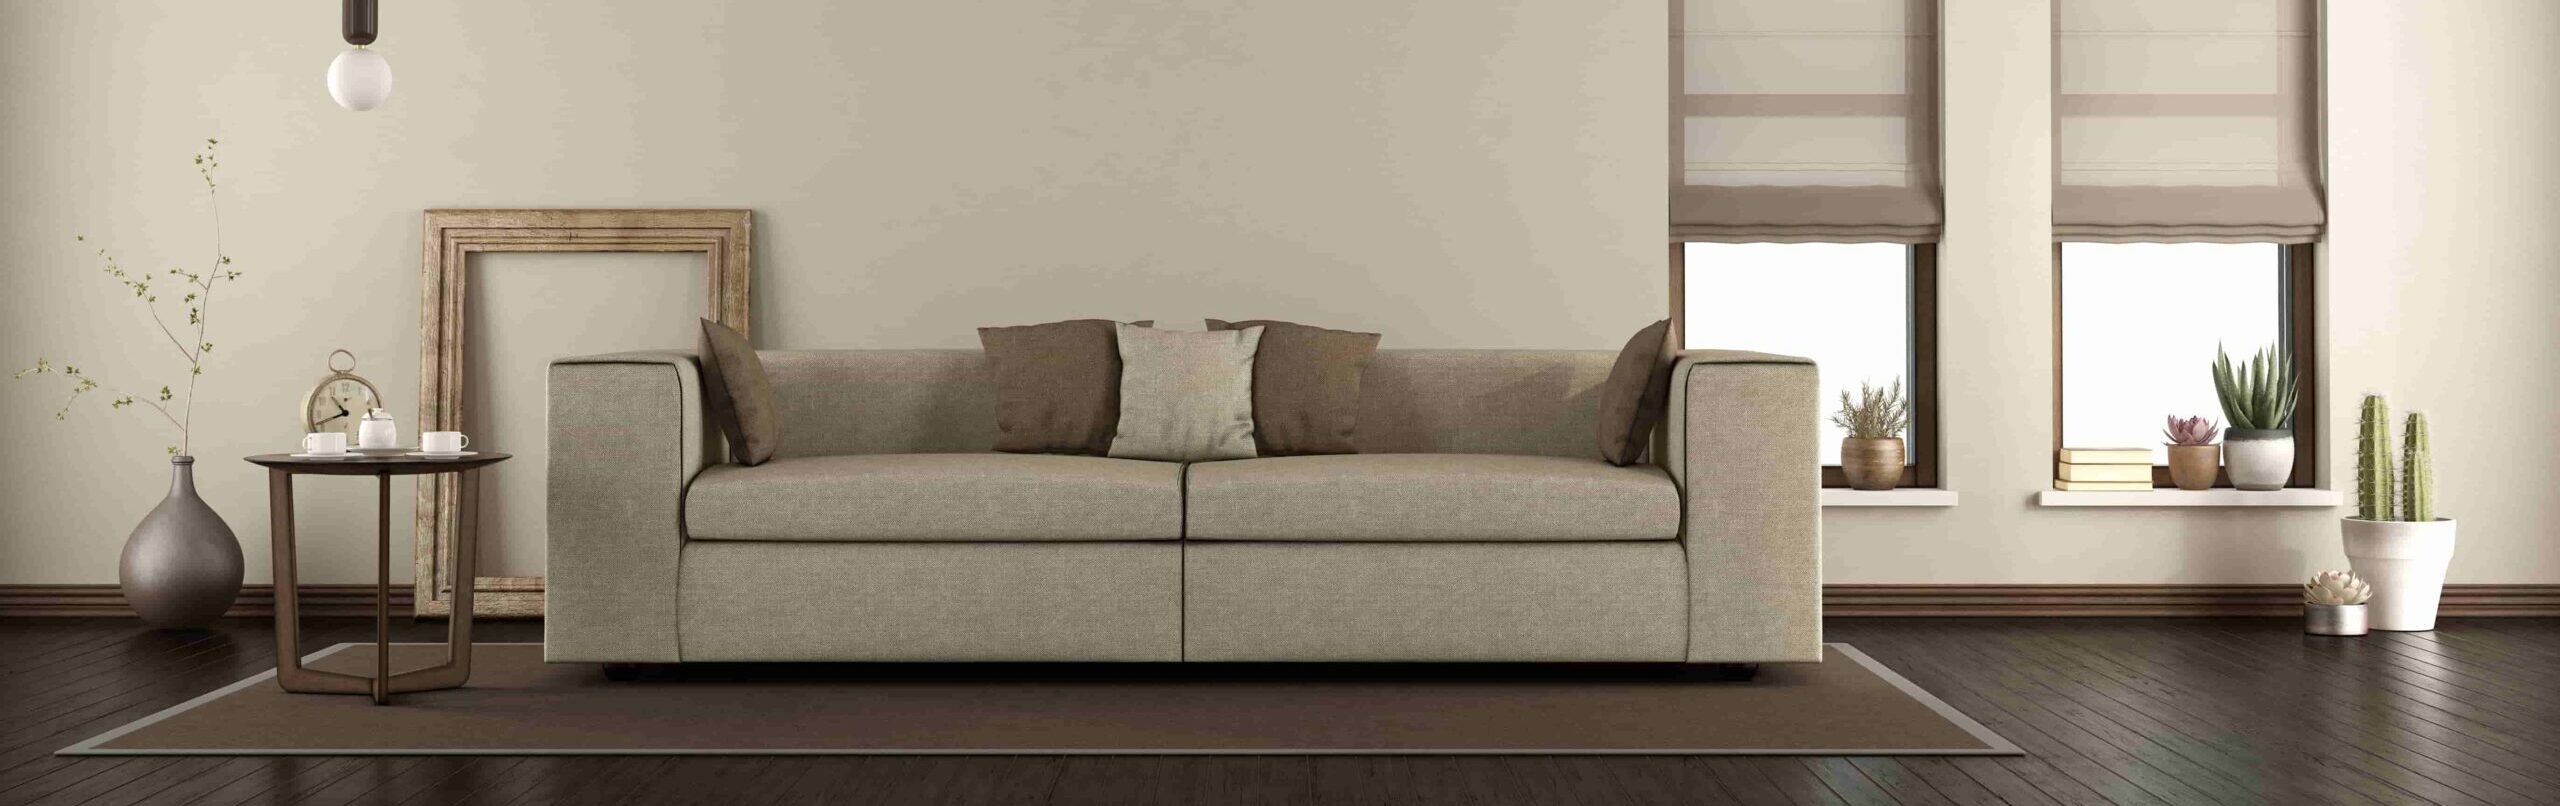 elegante sala de estar com sofá no tapete escalado e1627543817277